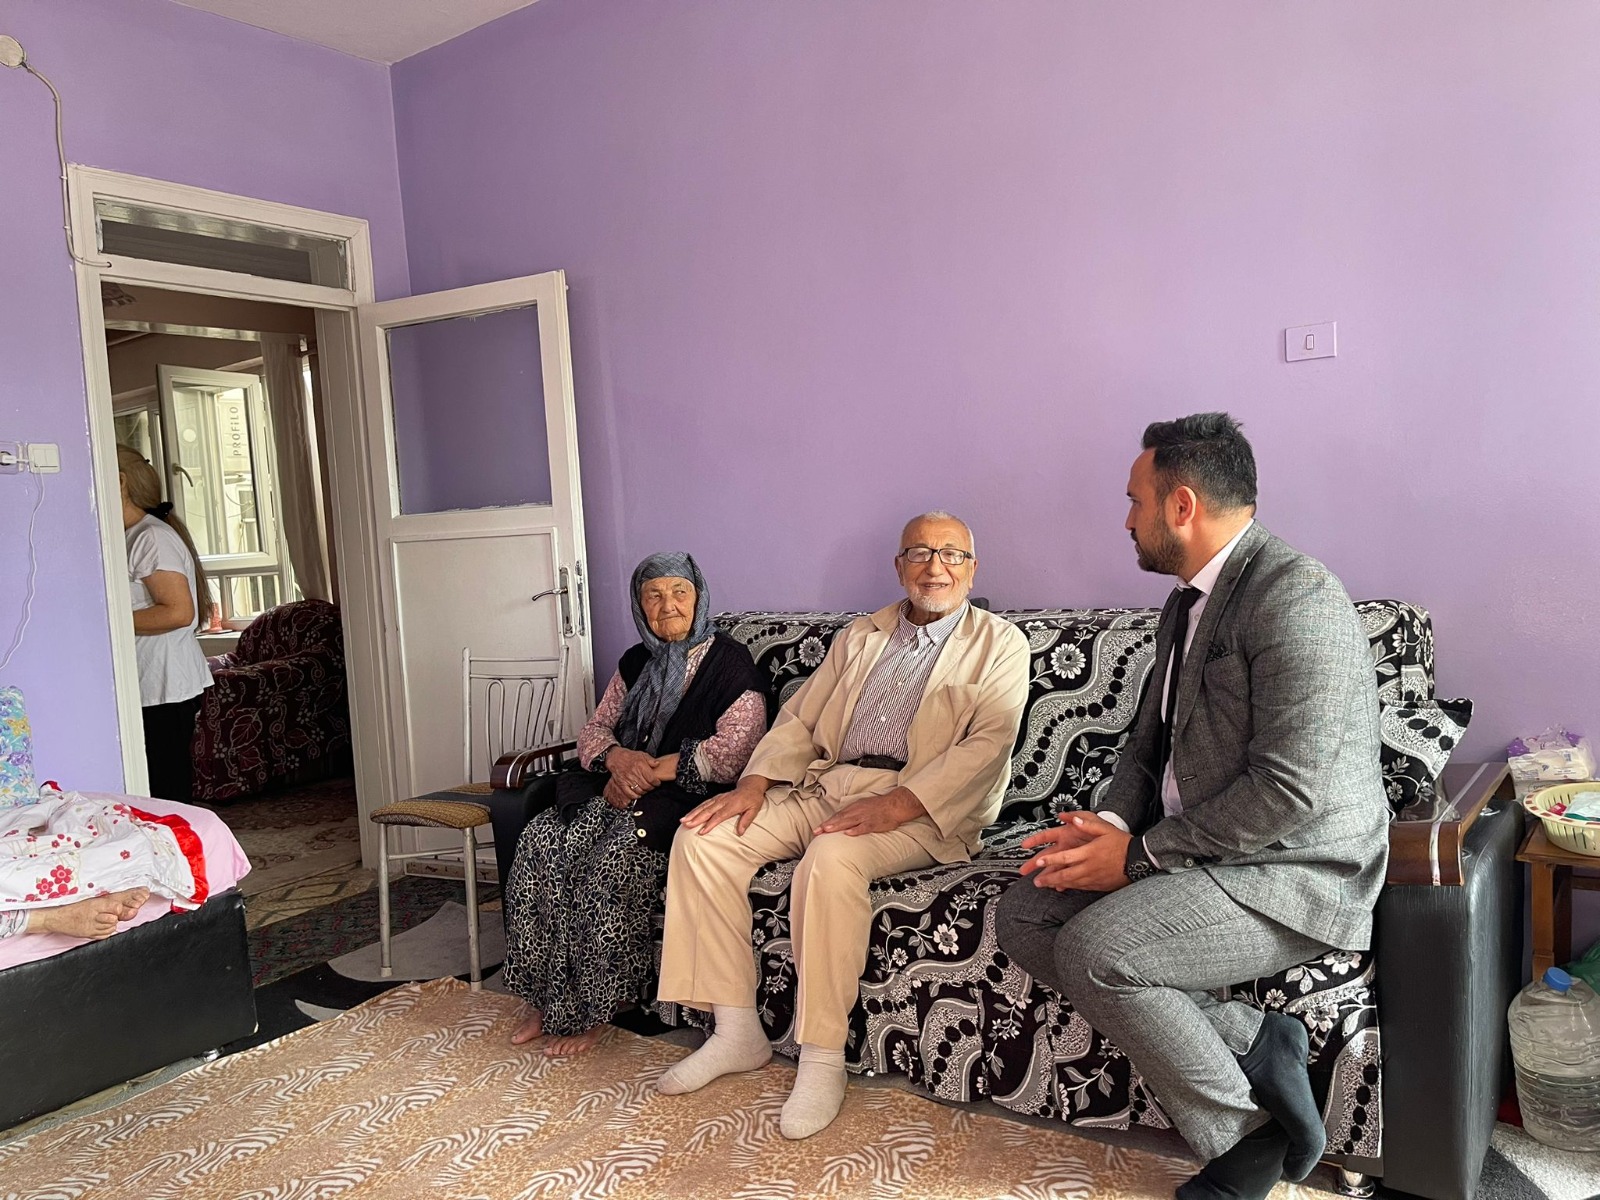 Gaziantep Büyükşehir Belediyesi vatandaşların taleplerini evlerinde dinliyor